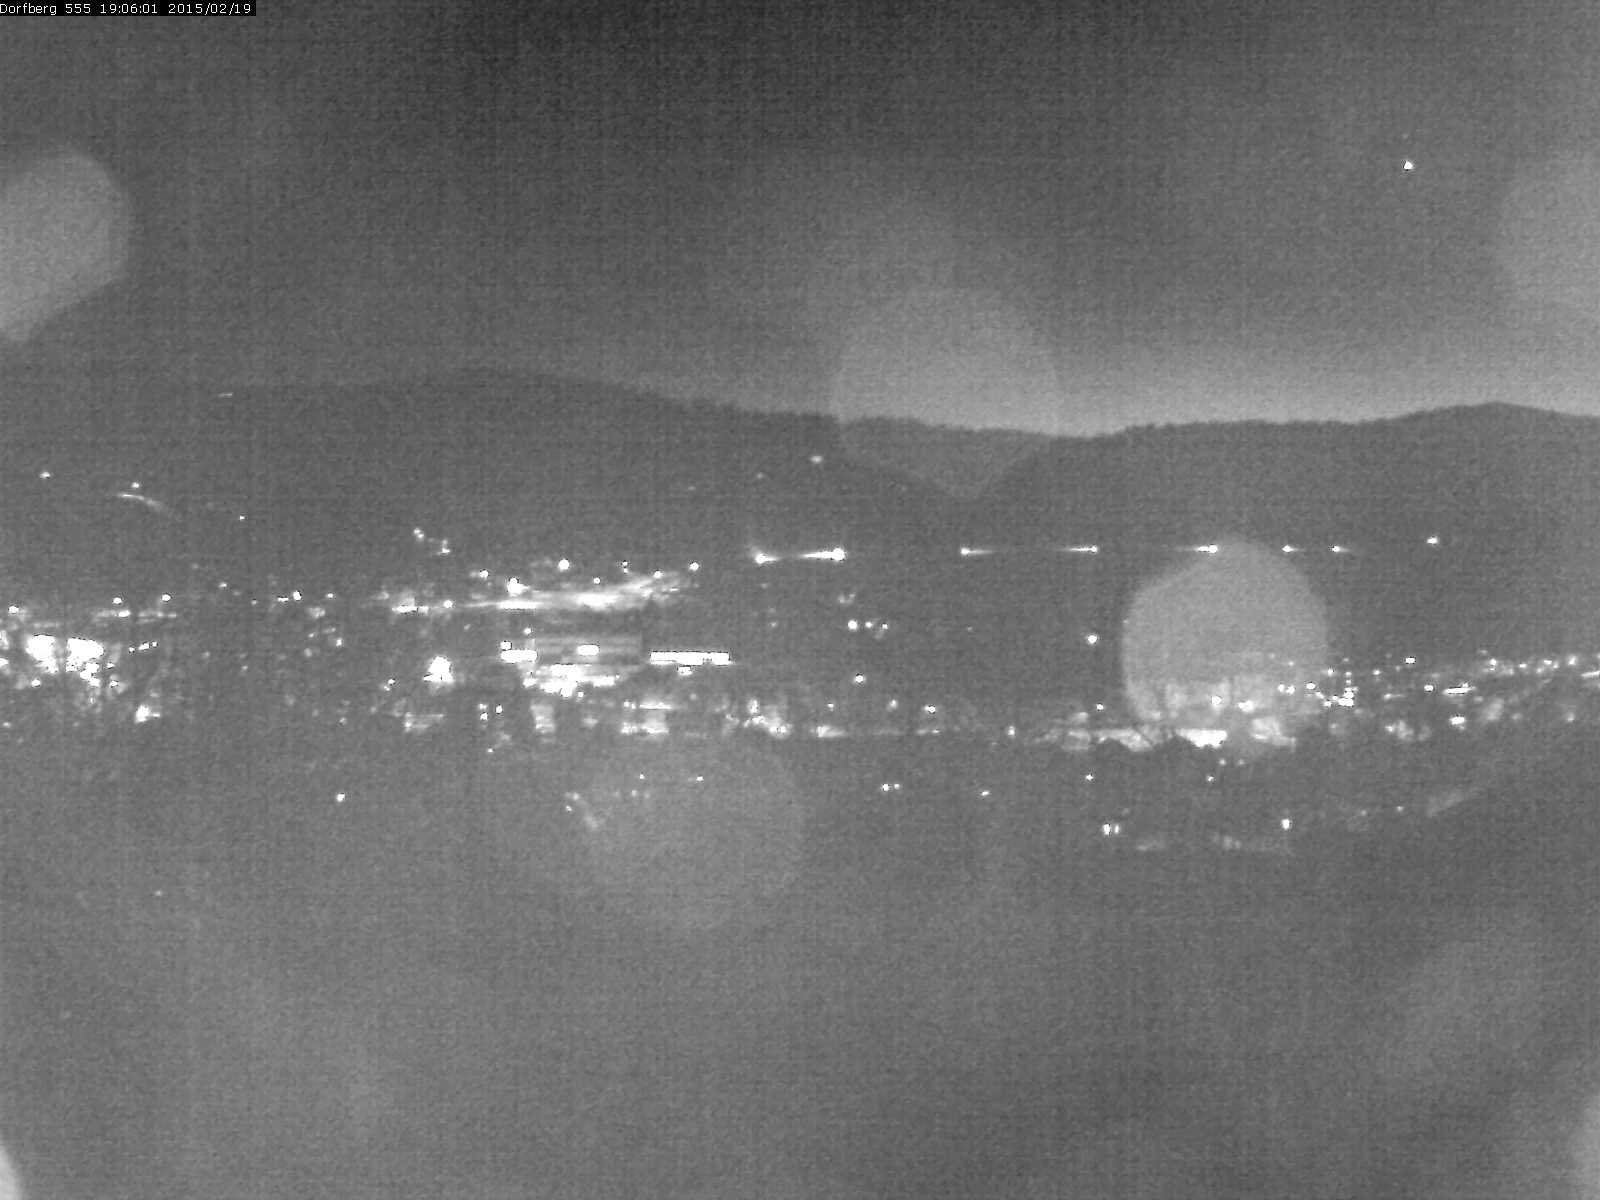 Webcam-Bild: Aussicht vom Dorfberg in Langnau 20150219-190601